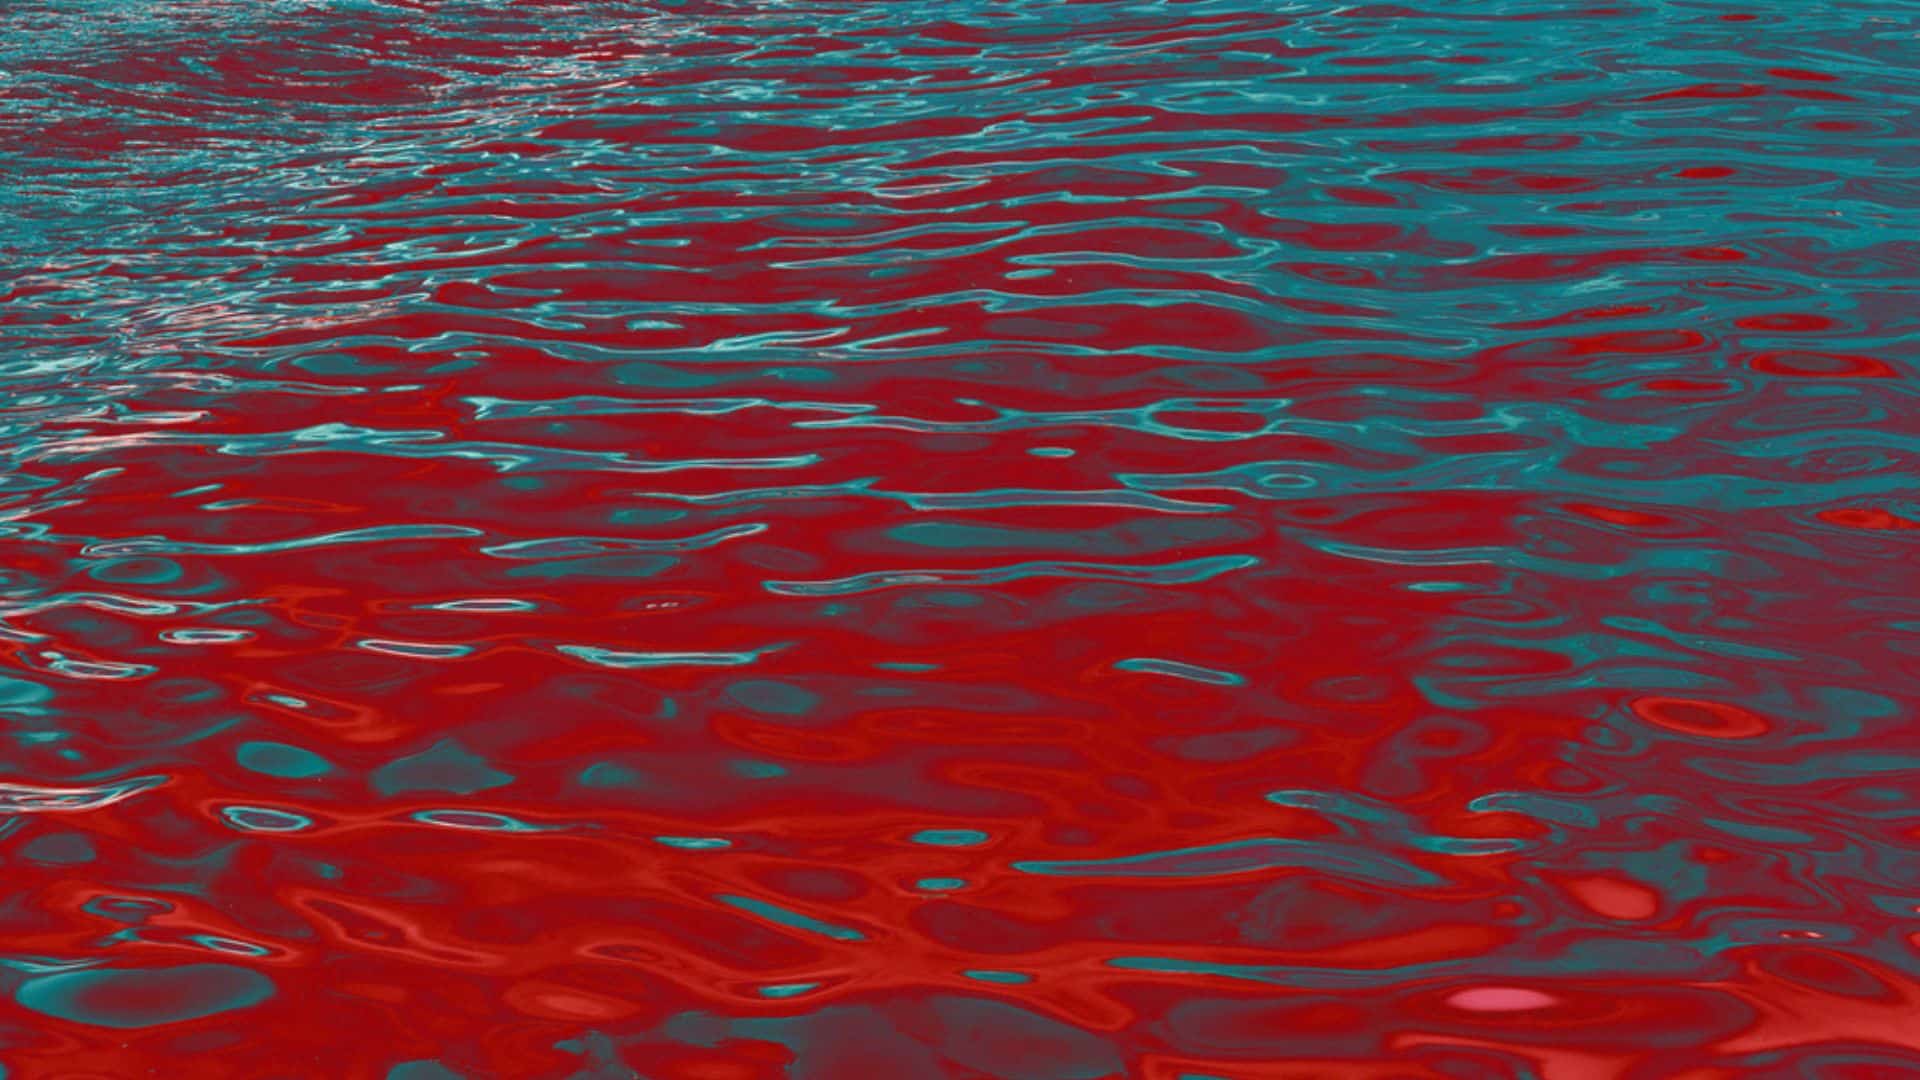 Uma corrente d'água cuja coloração é vermelha.